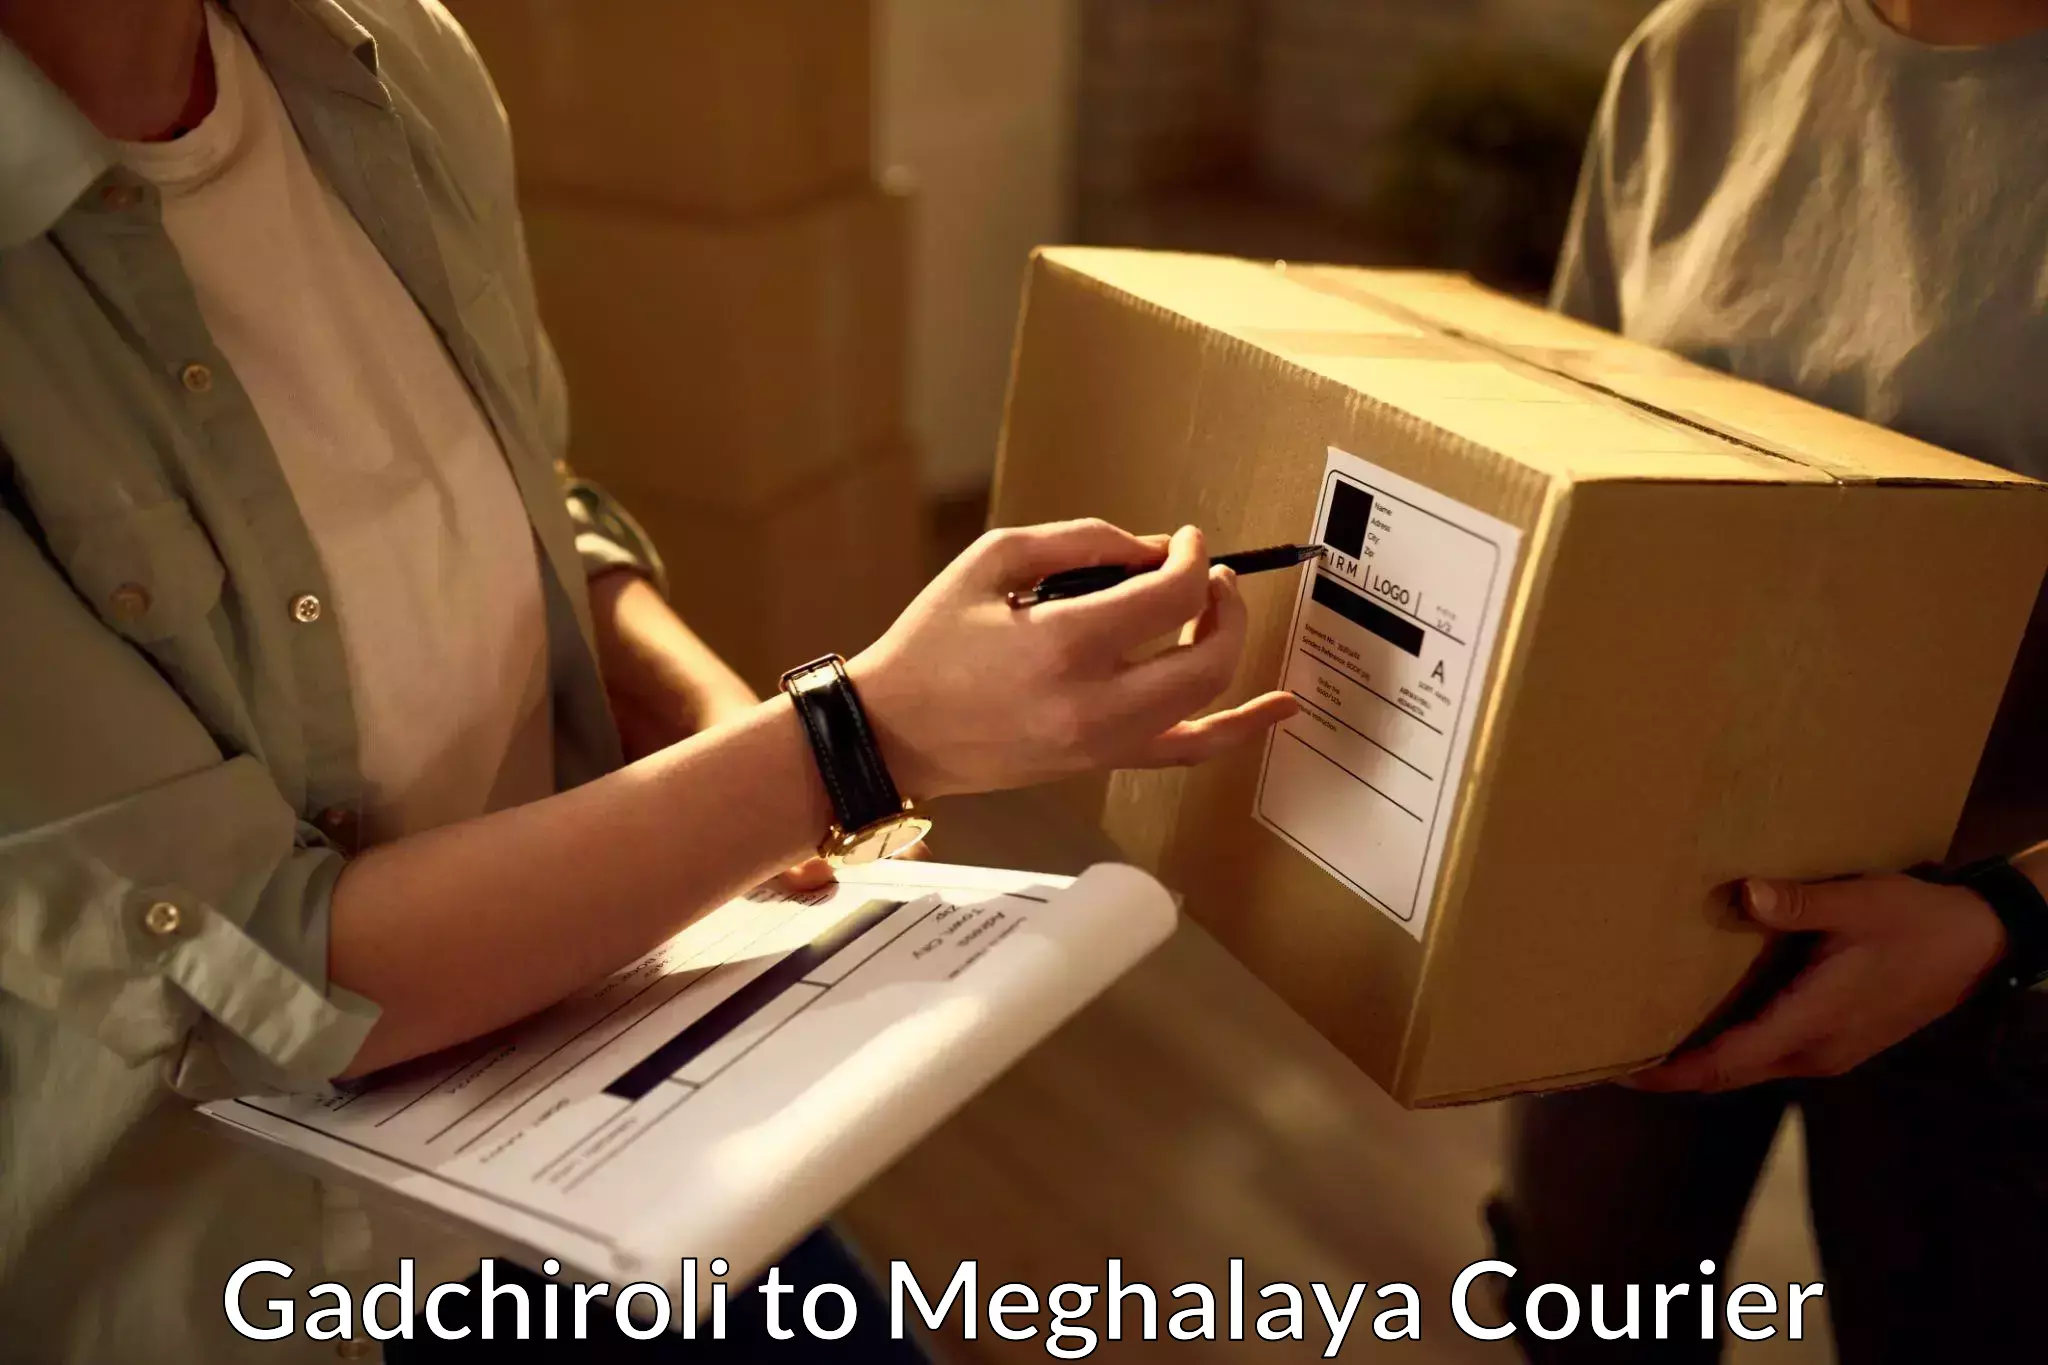 Express logistics service Gadchiroli to NIT Meghalaya